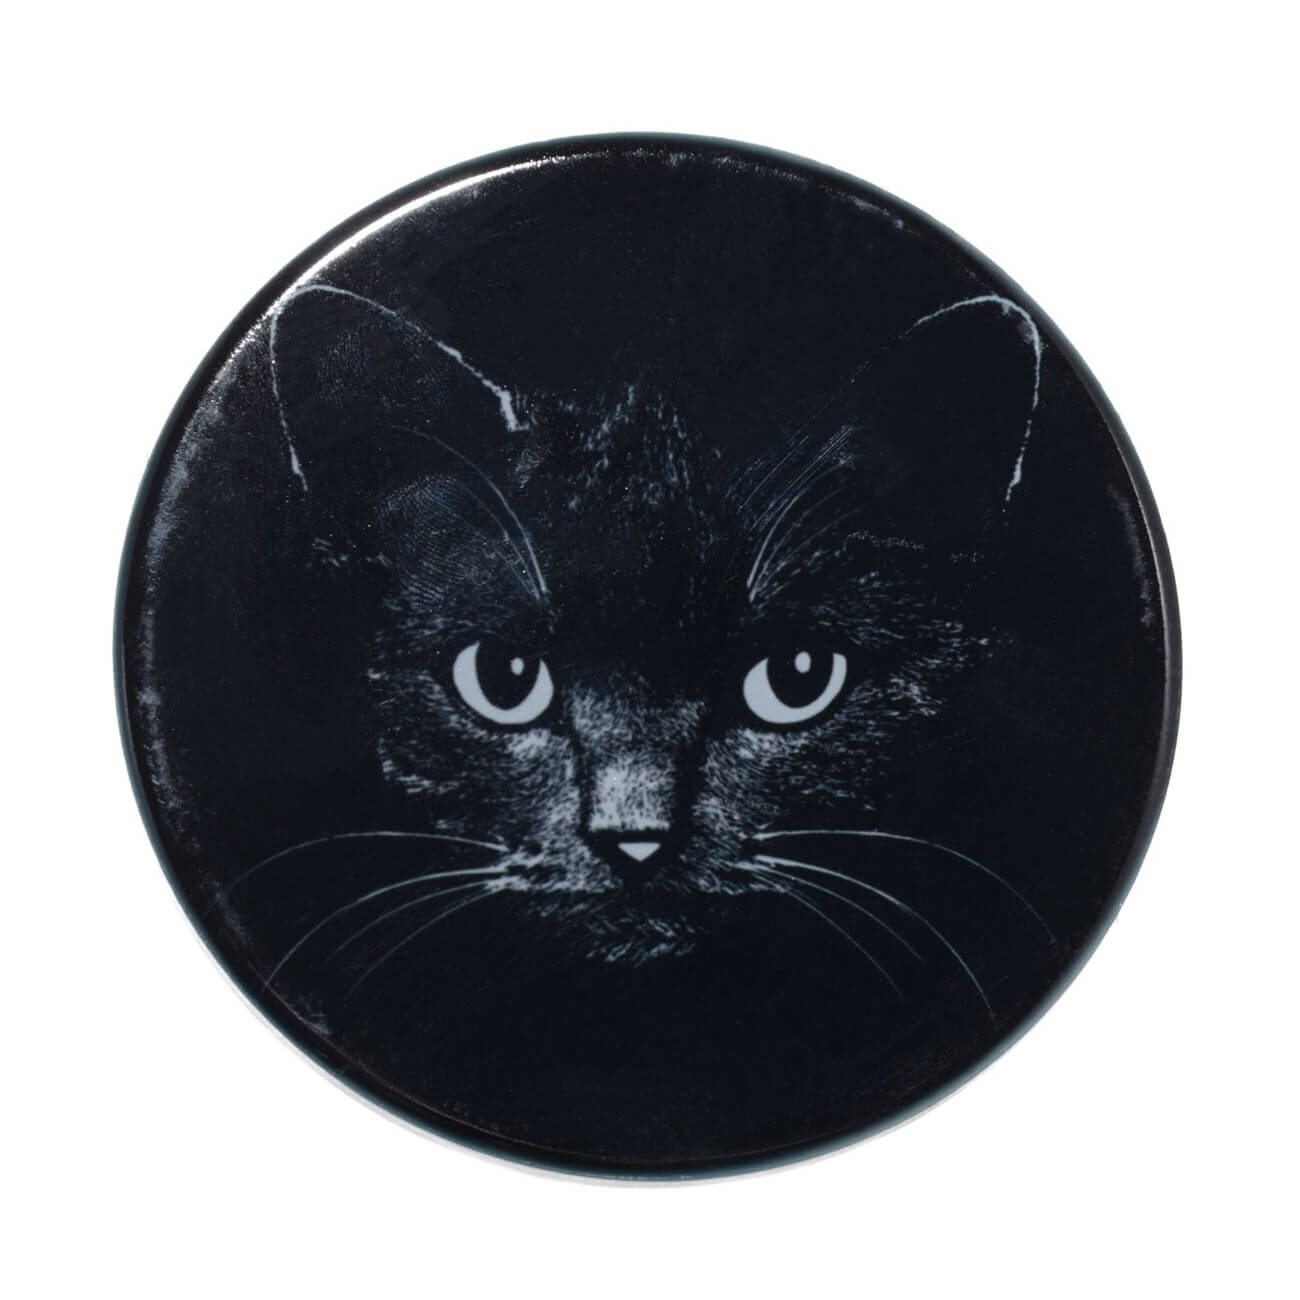 Подставка под кружку, 11x11 см, керамика/пробка, круглая, черная, Ночной кот, Cat night подставка под кружку